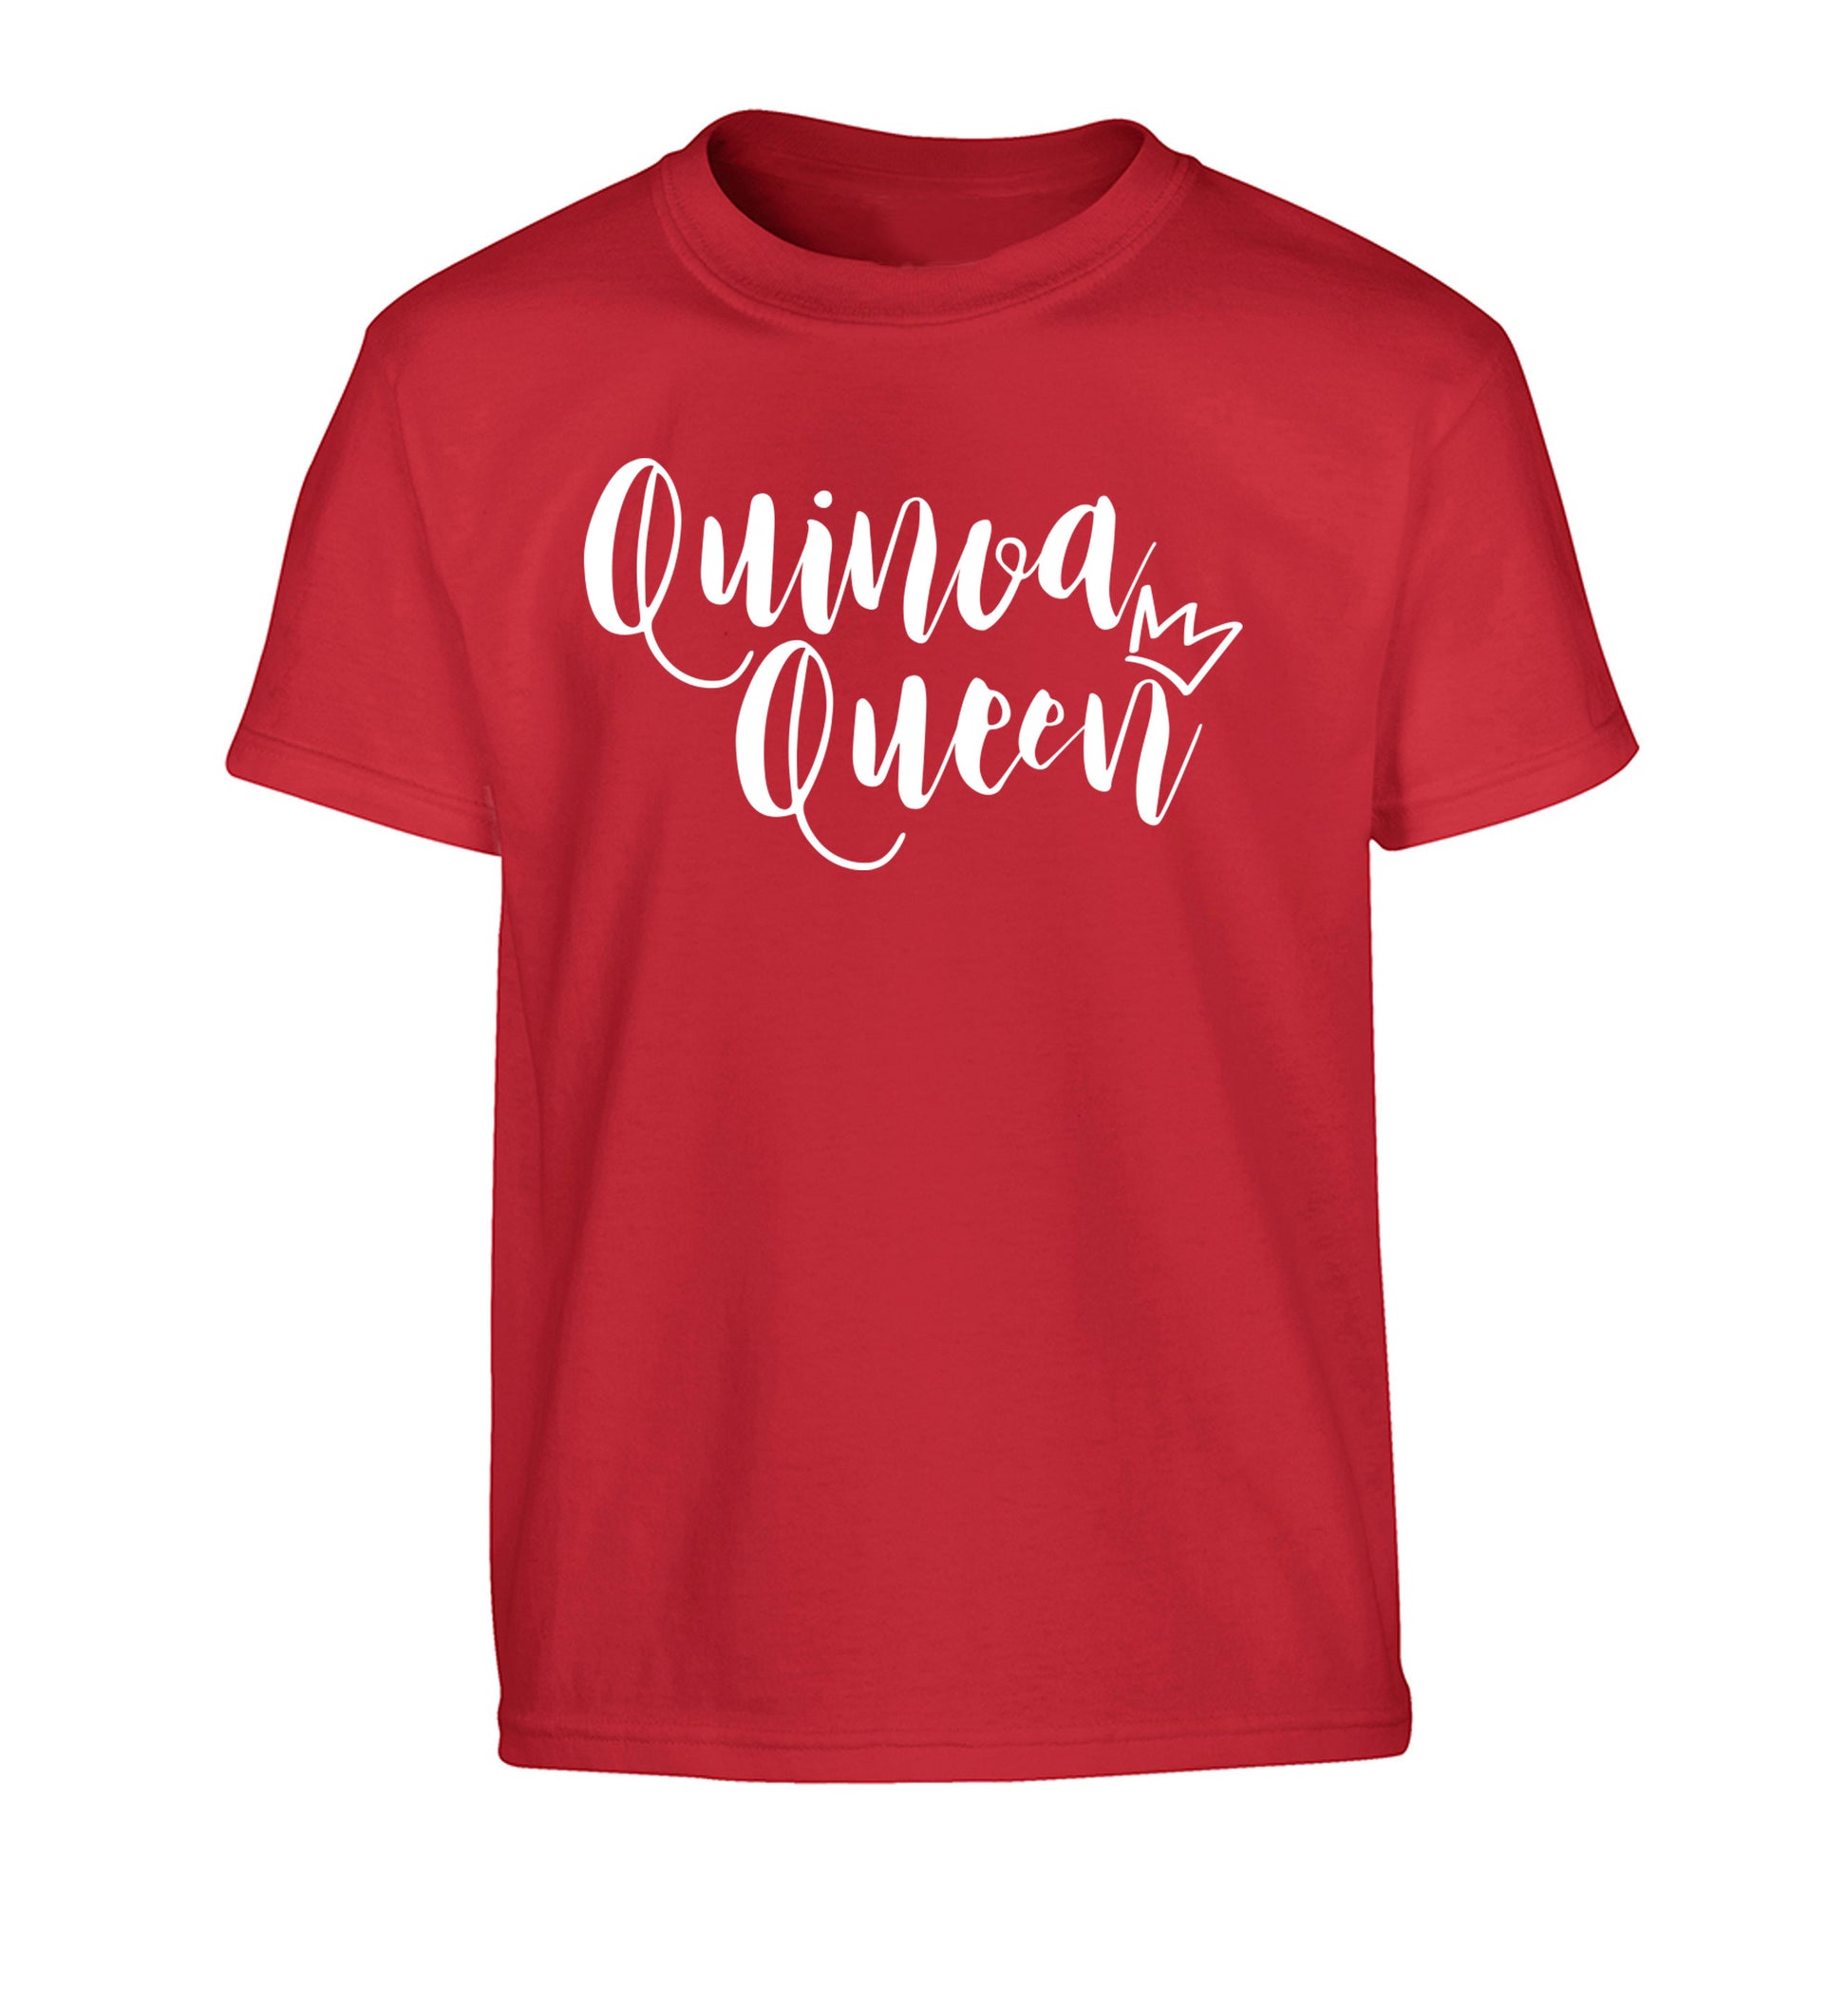 Quinoa Queen Children's red Tshirt 12-14 Years